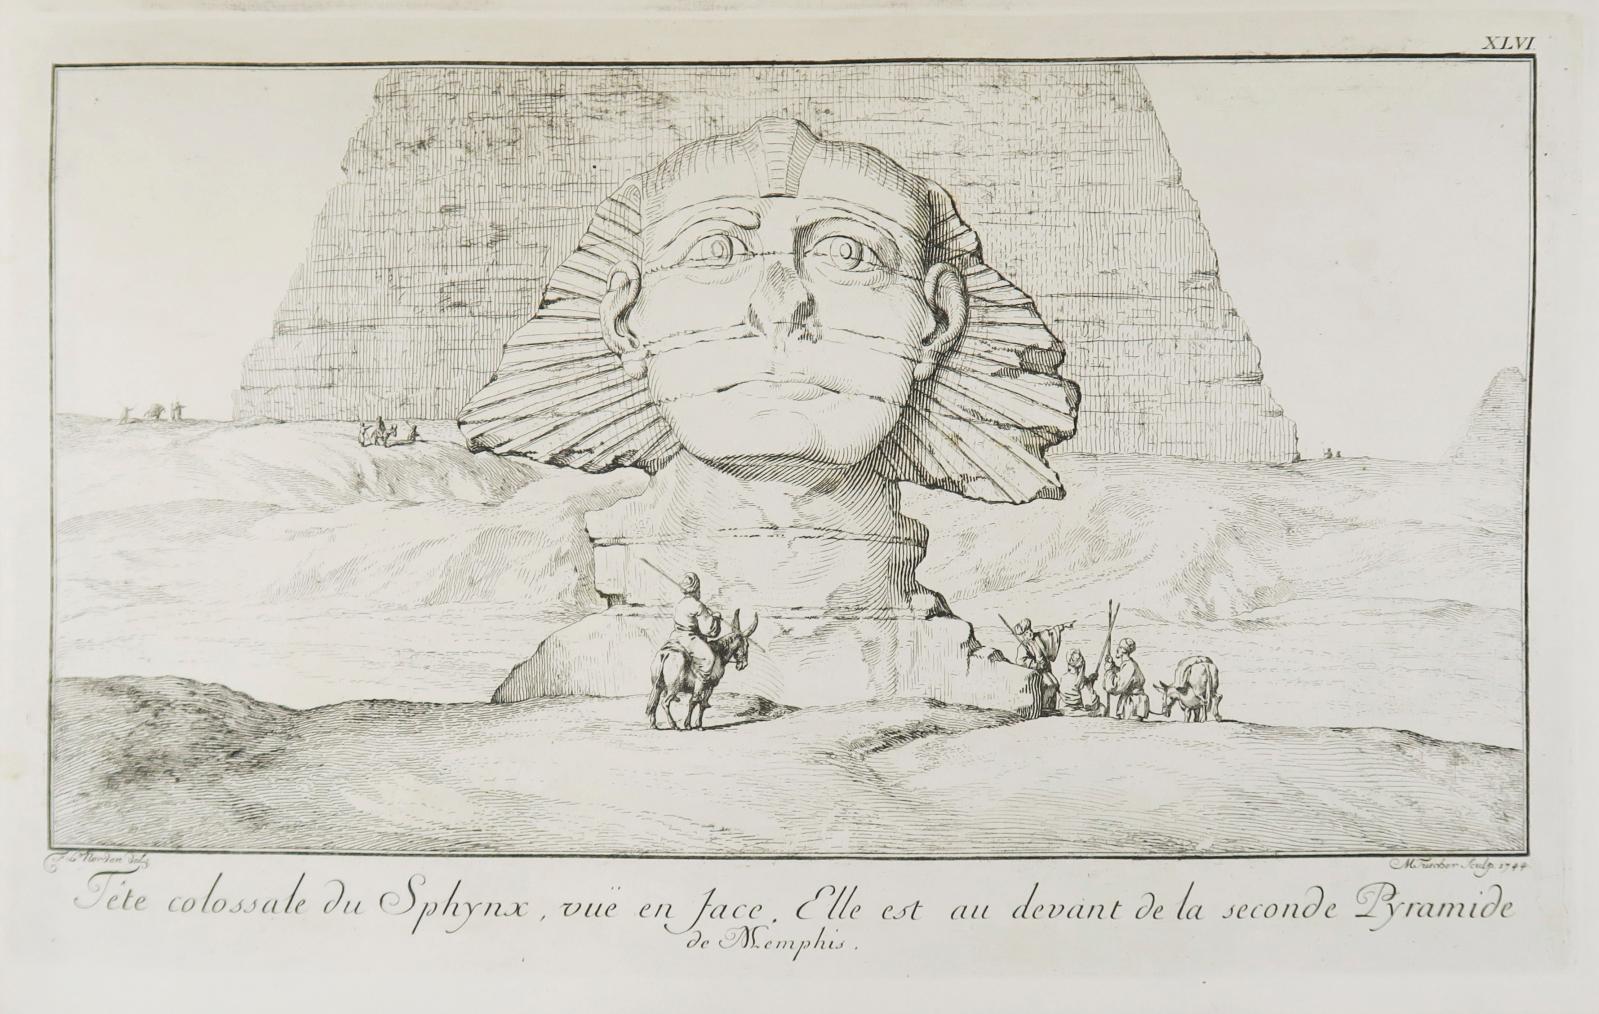 L’Égypte vue au début du XVIIIe siècle 